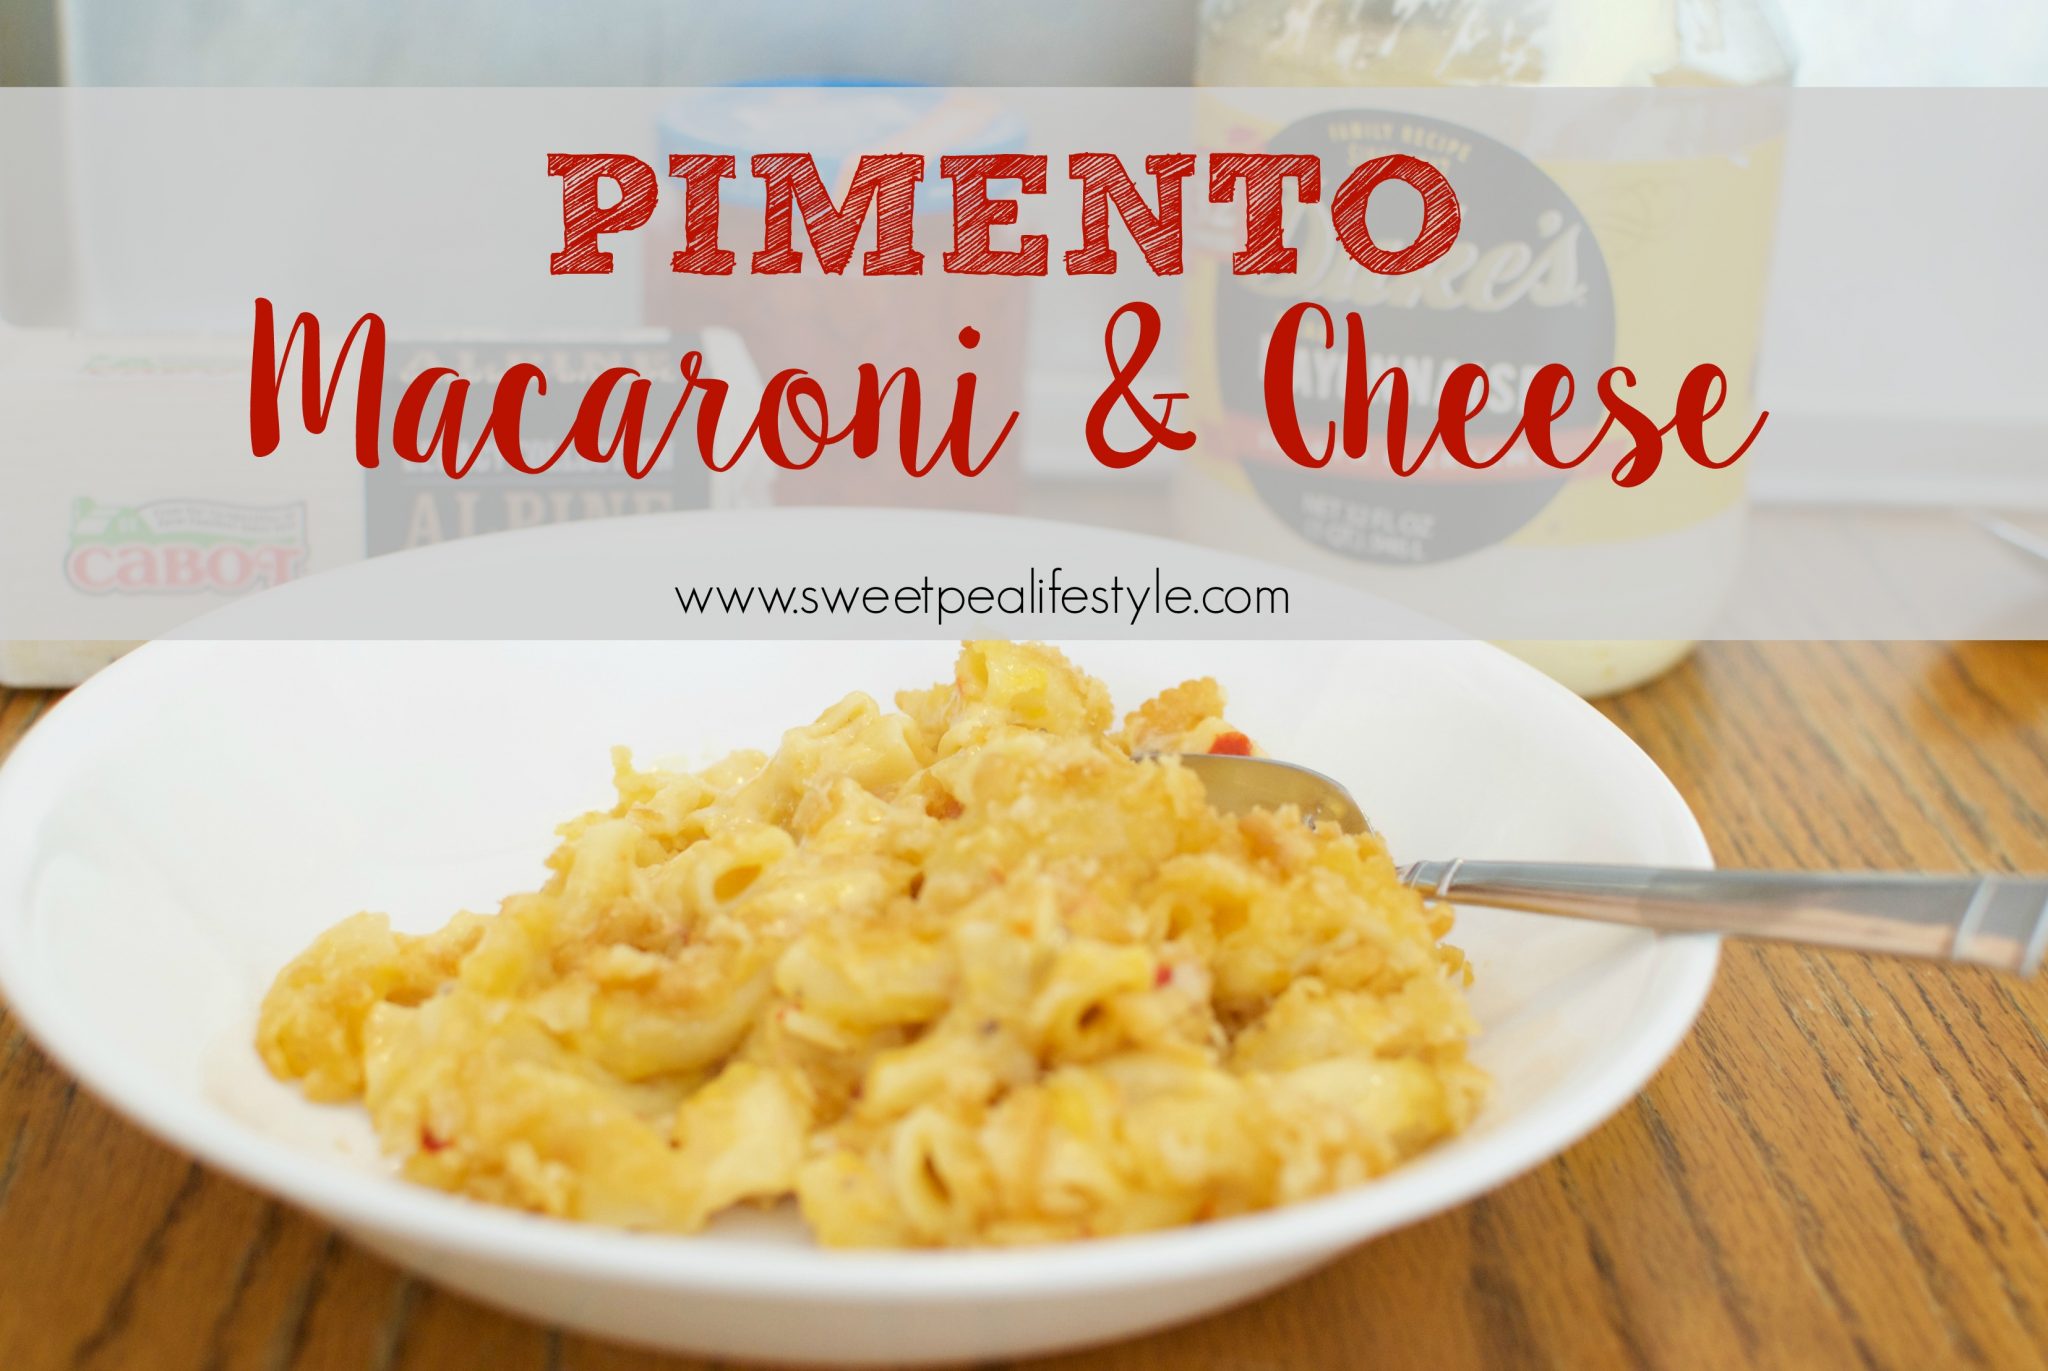 Pimento Macaroni & Cheese